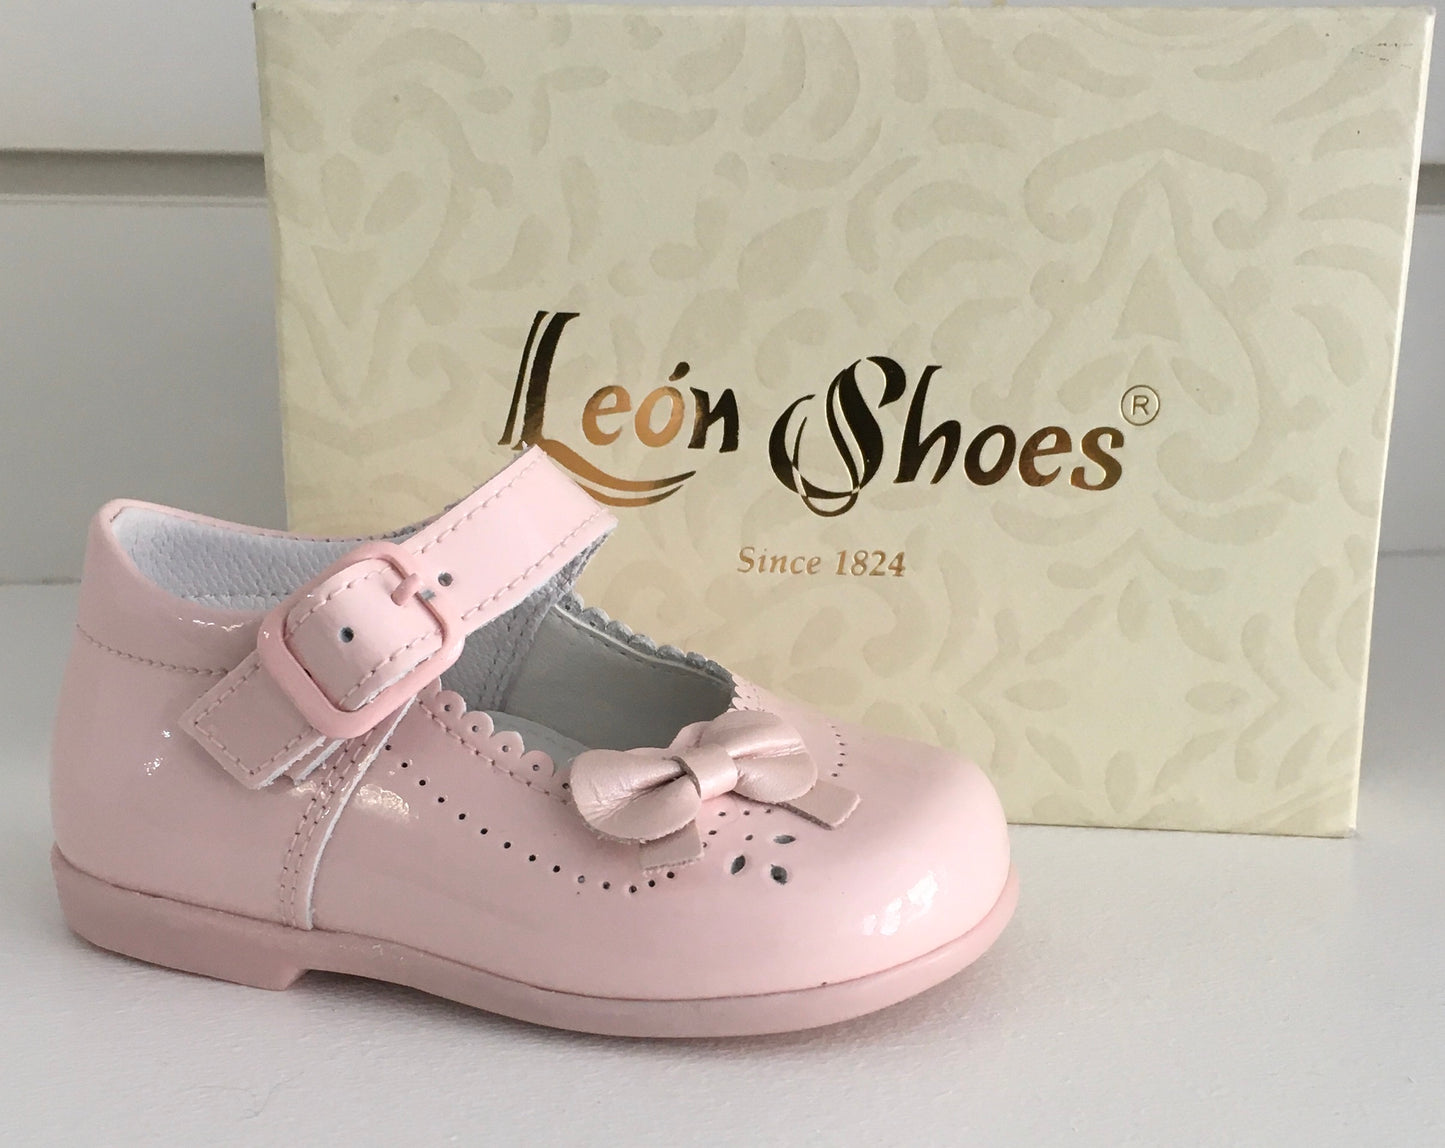 Leon Shoes Patent